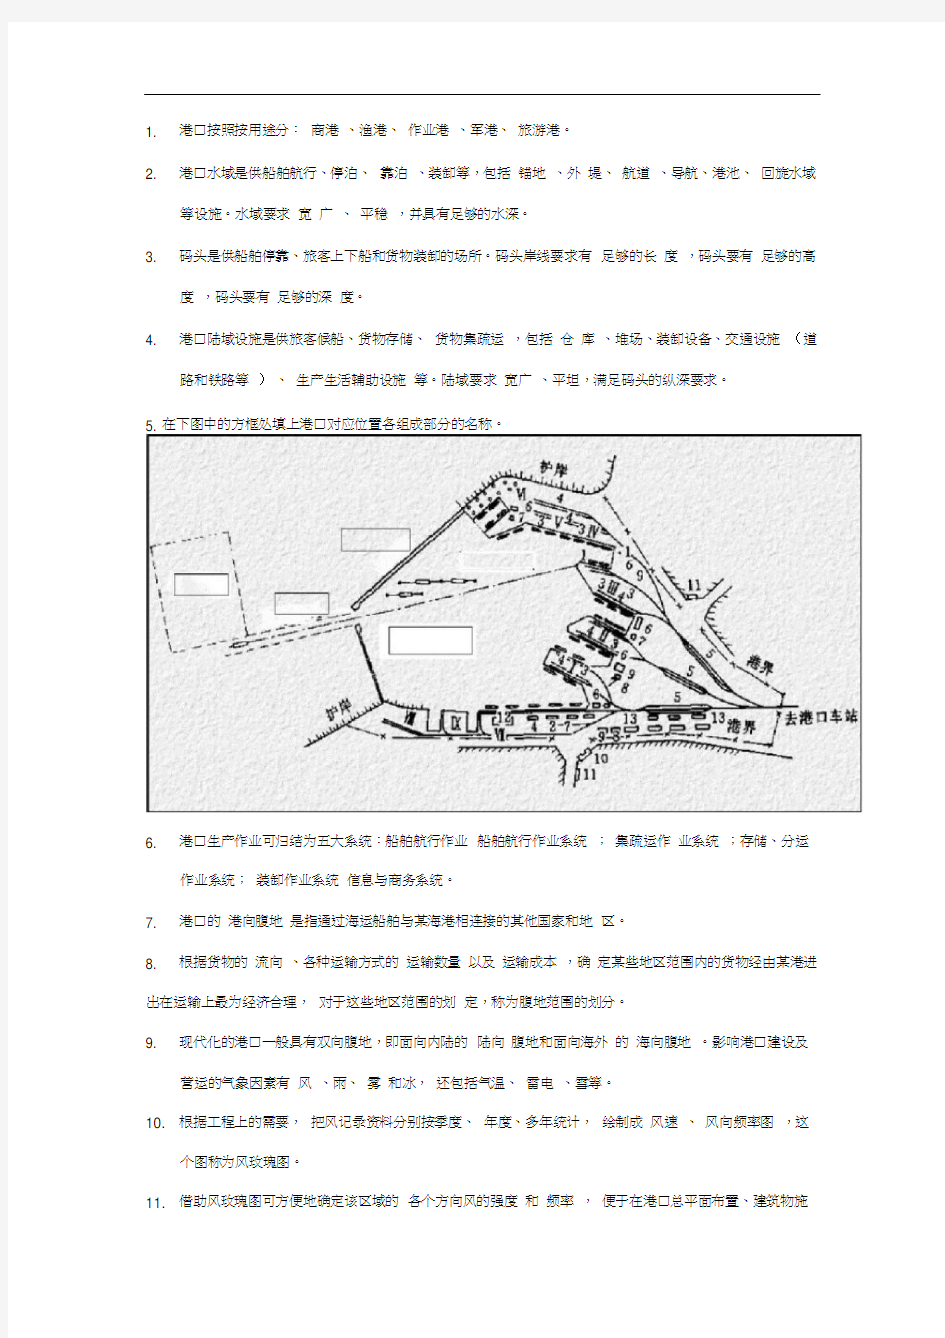 上海海事大学港航工程必看填空题(部分答案已填写)解析